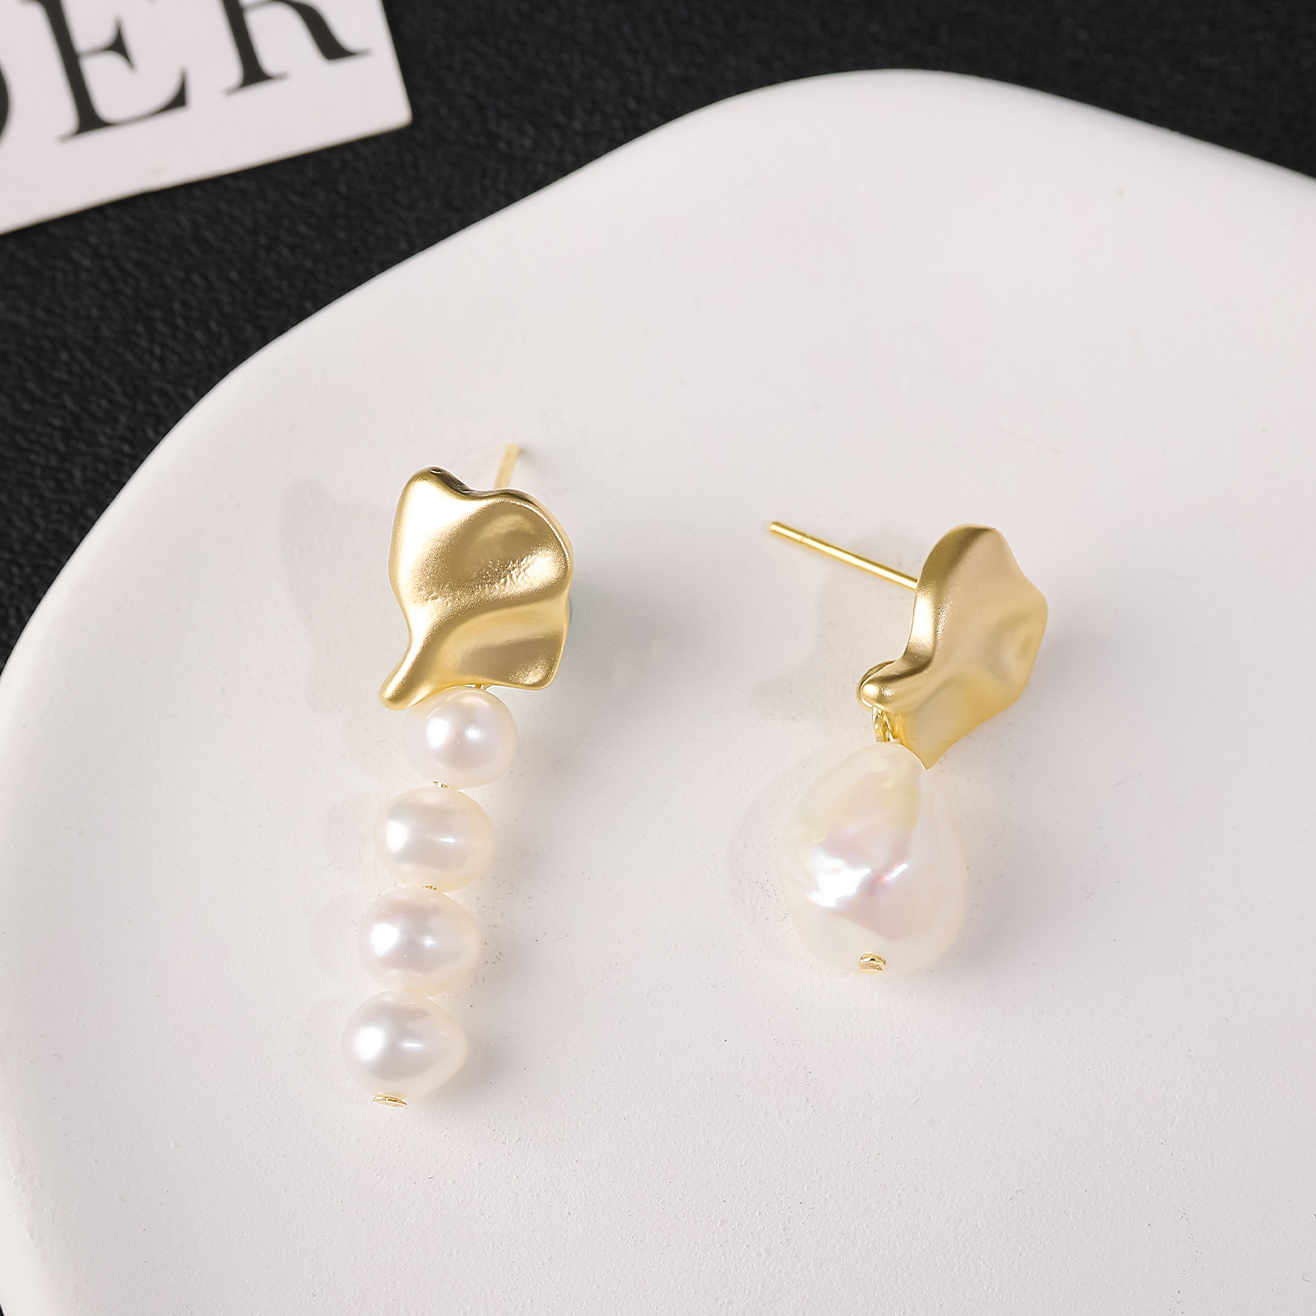 2:Gold stud earrings